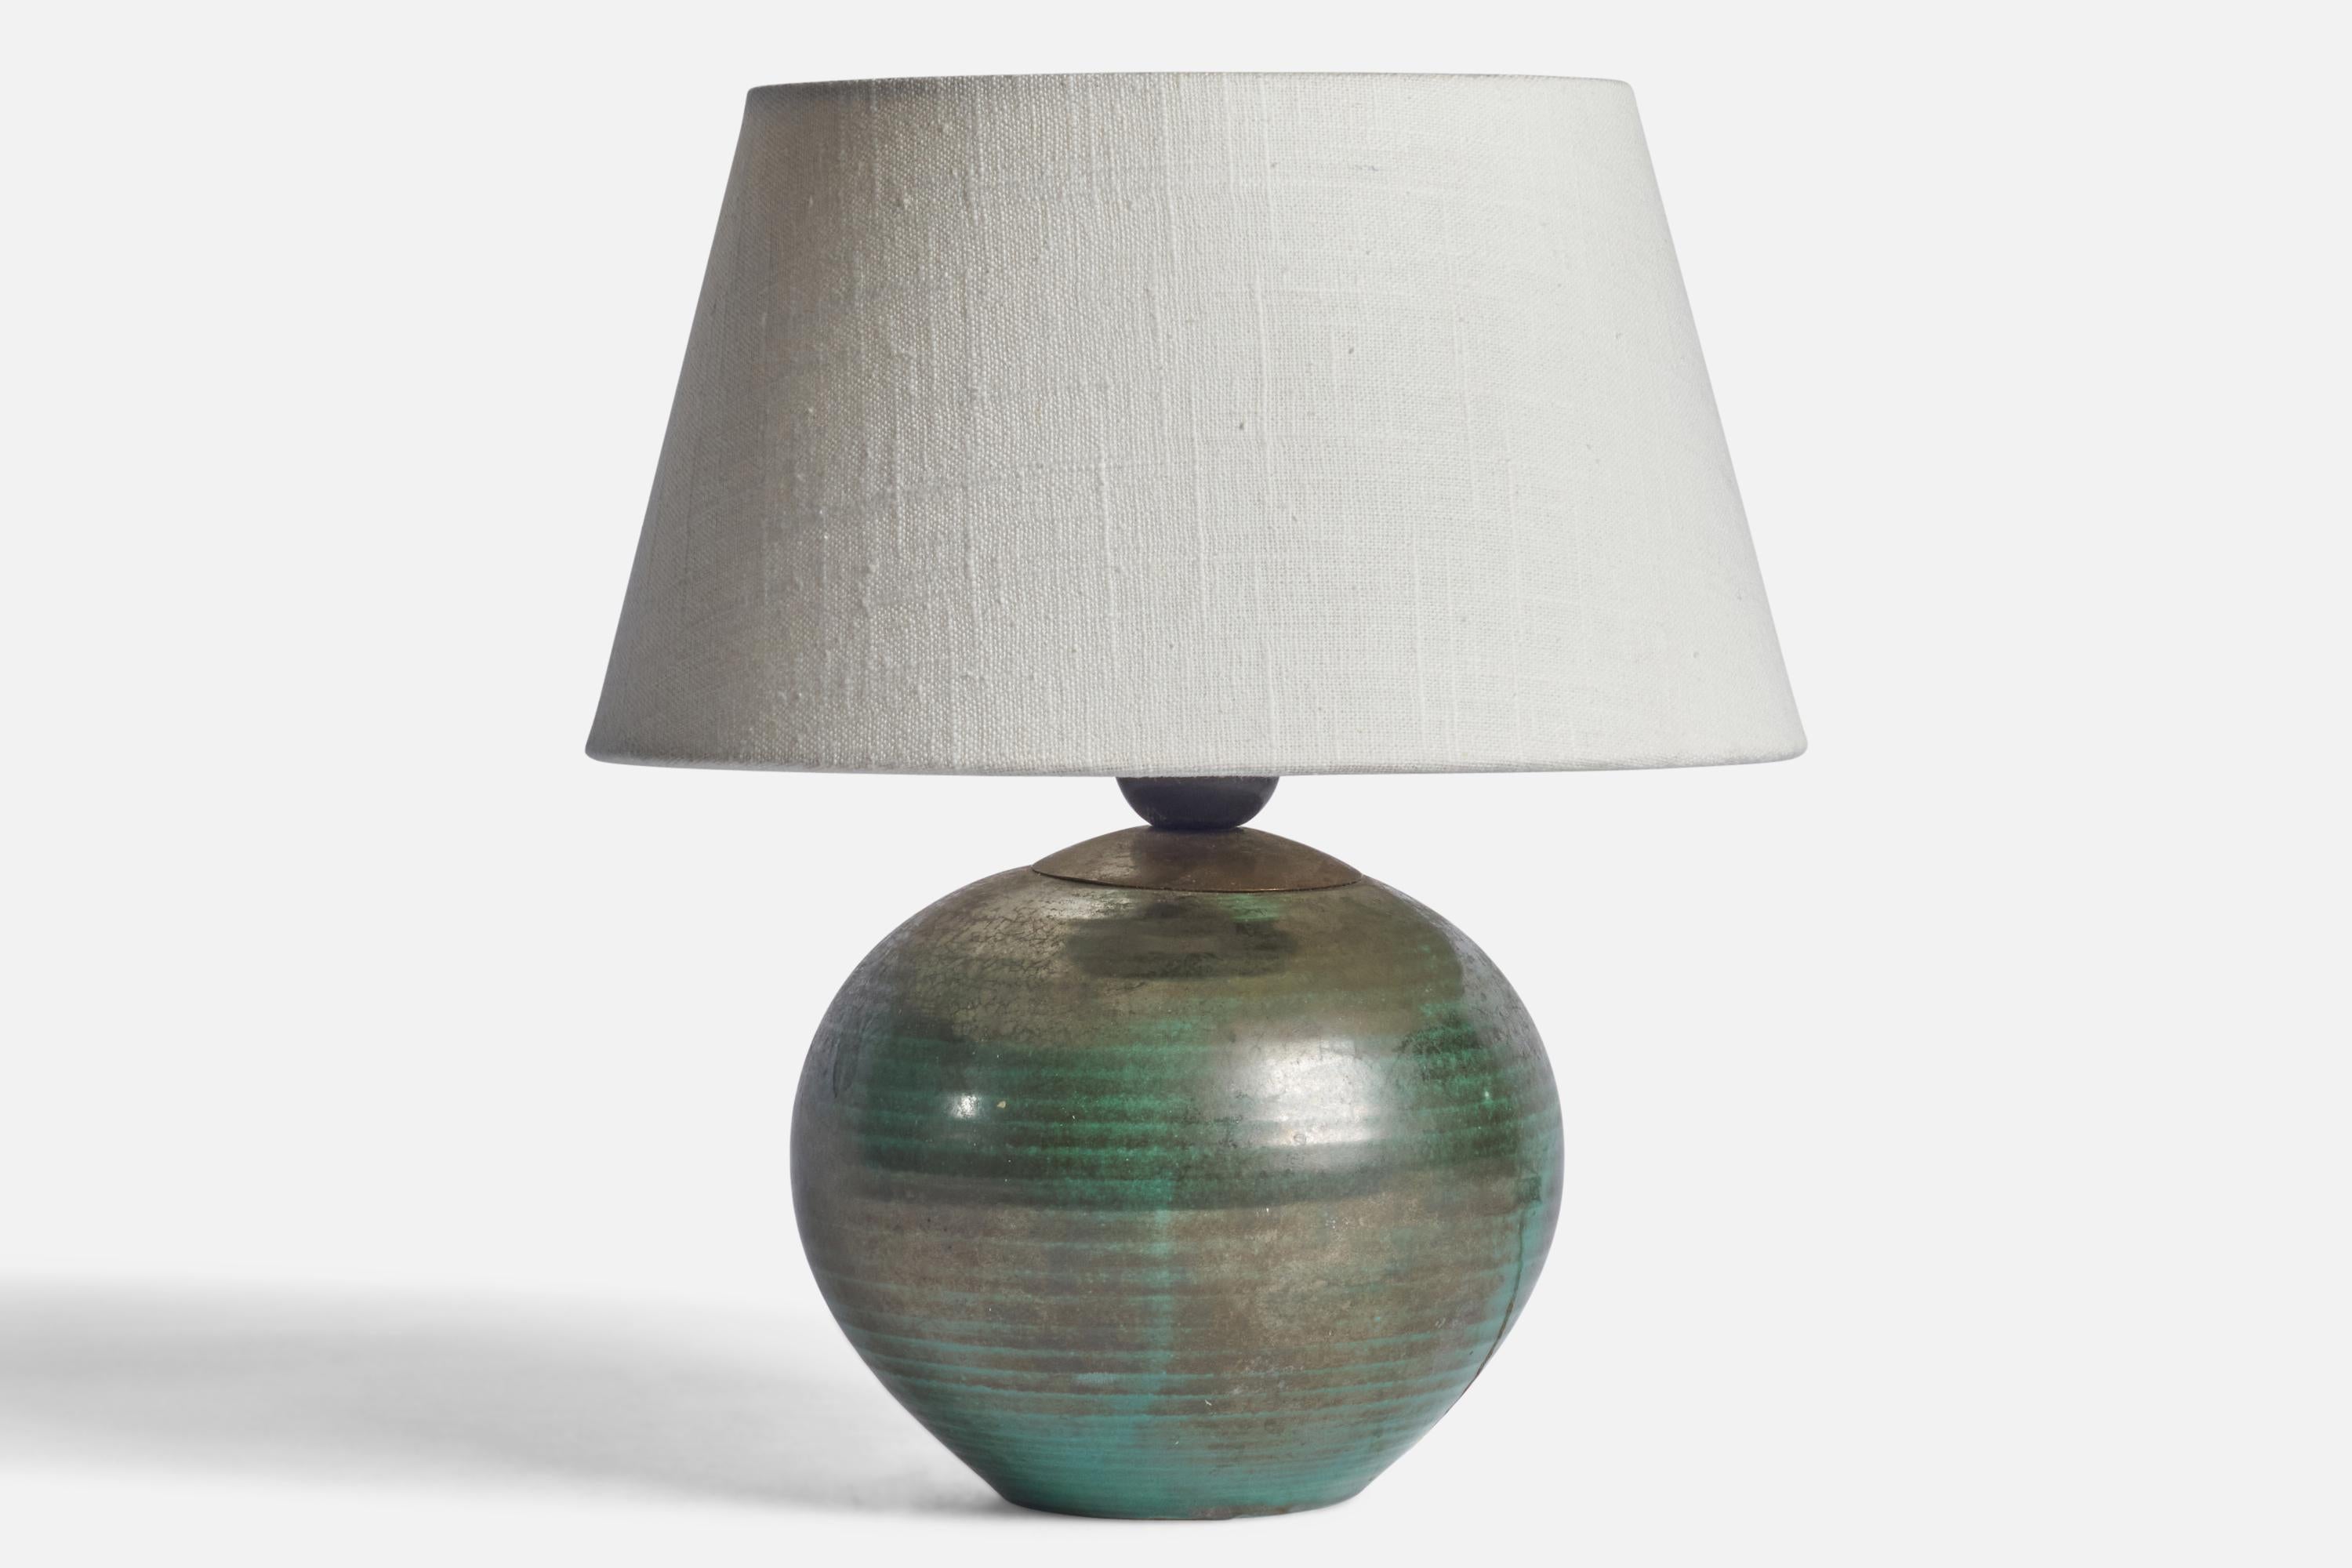 Lampe de table en faïence verte et incisée, conçue et produite par Upsala Ekeby, Suède, années 1930.

Dimensions de la lampe (pouces) : 8.75